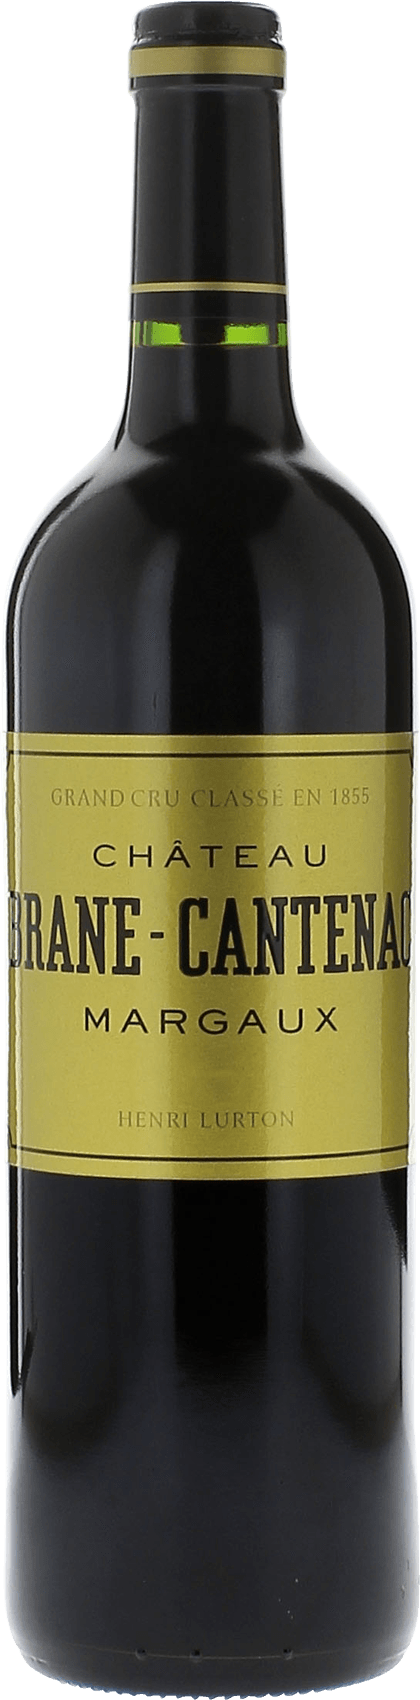 Brane-cantenac  2004 2me Grand cru class Margaux, Bordeaux rouge